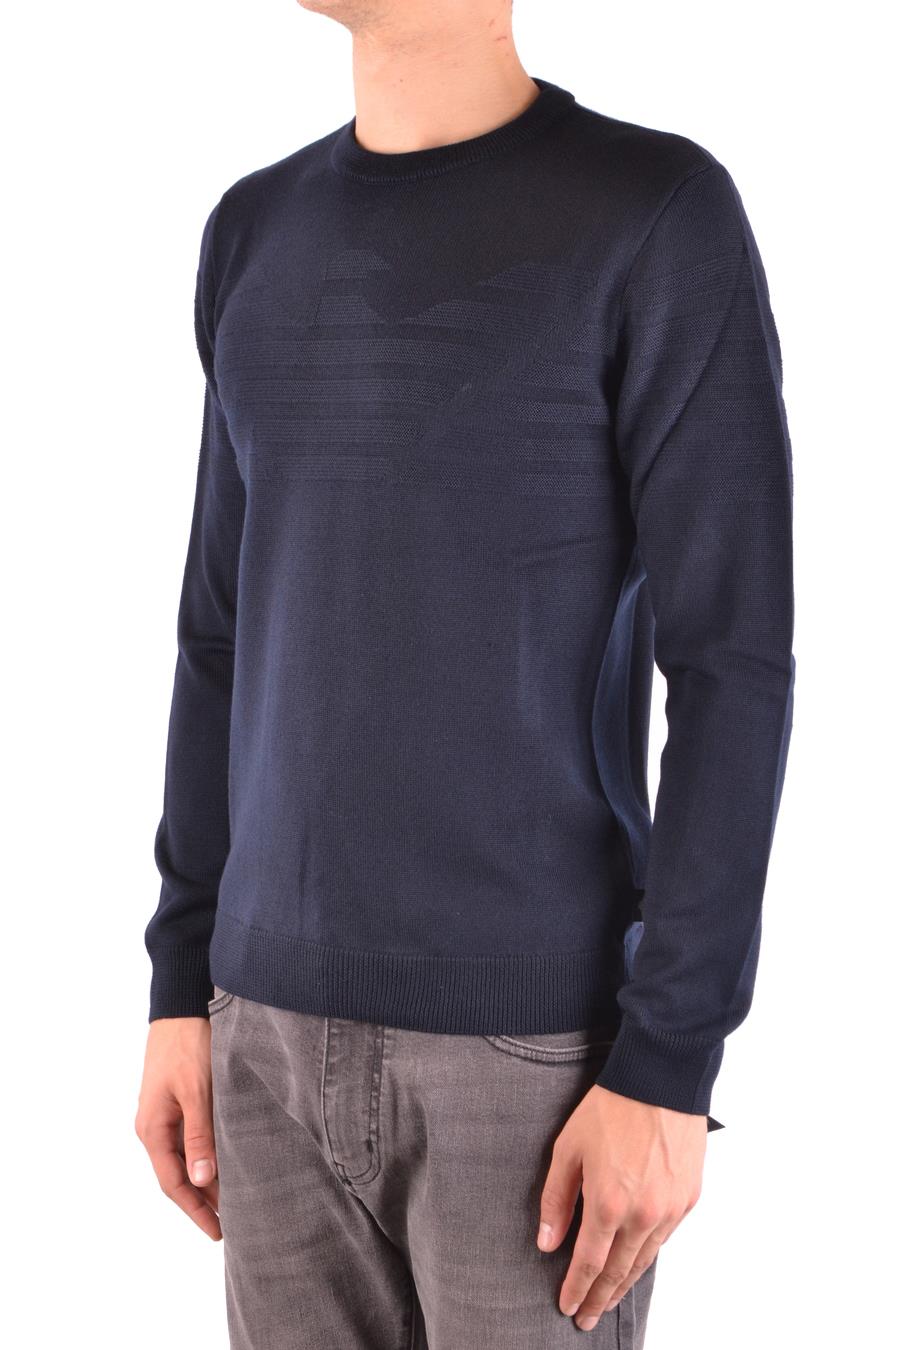 EMPORIO ARMANI Sweaters | ViganoBoutique.com